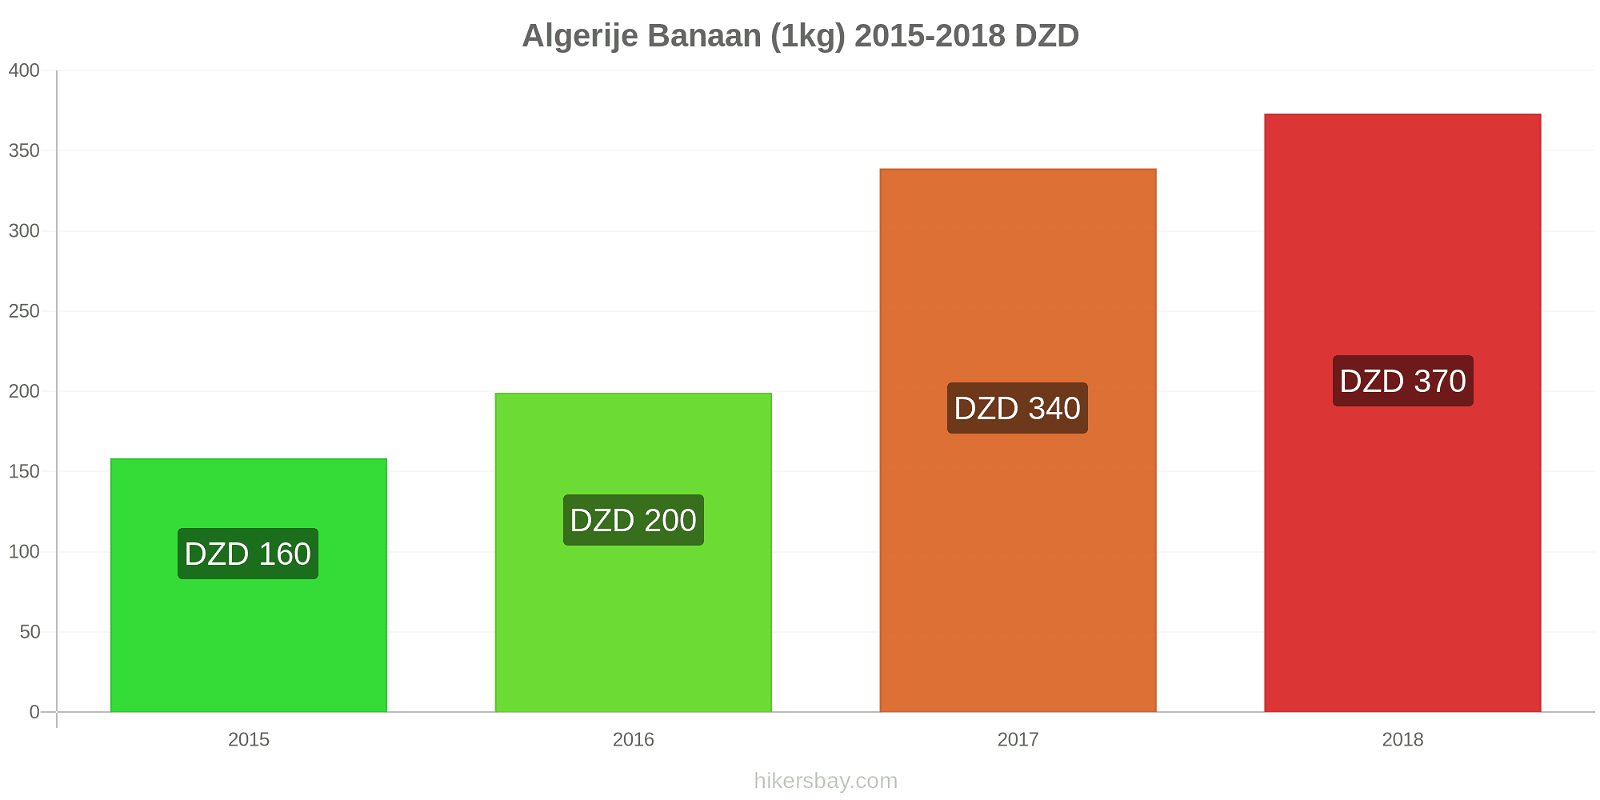 Algerije prijswijzigingen Bananen (1kg) hikersbay.com